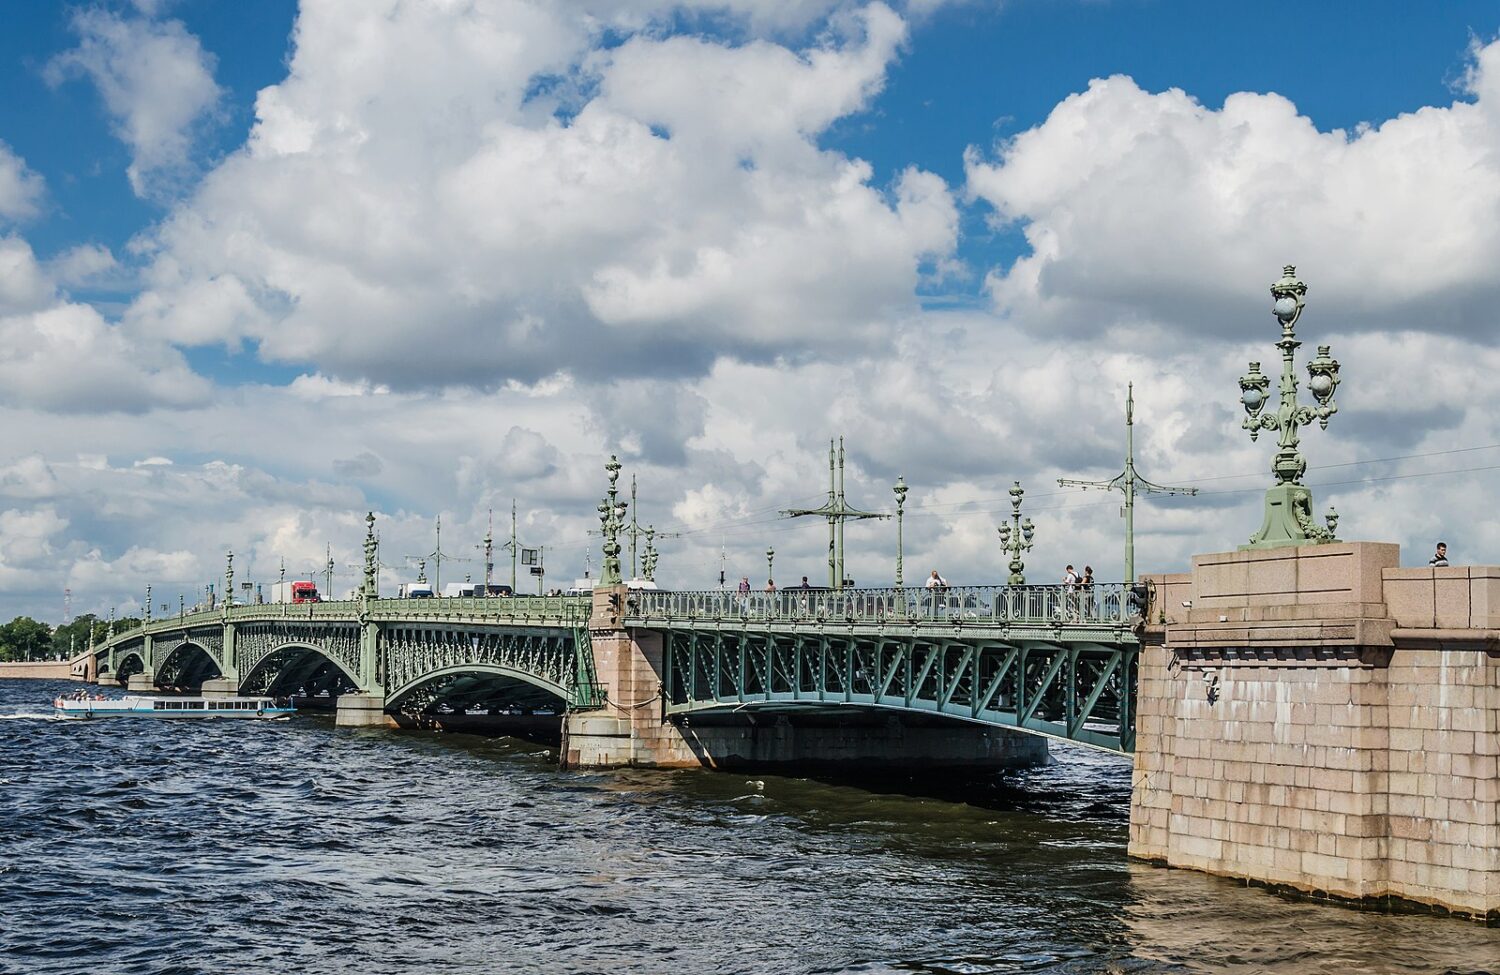 Un pont de métal vert avec quelques colonnes de pierres beiges s'étend au-dessus d'une eau bleu-gris agitée. Un ciel légèrement bleu, mais principalement ennuagé, se profile au-dessus du pont. 